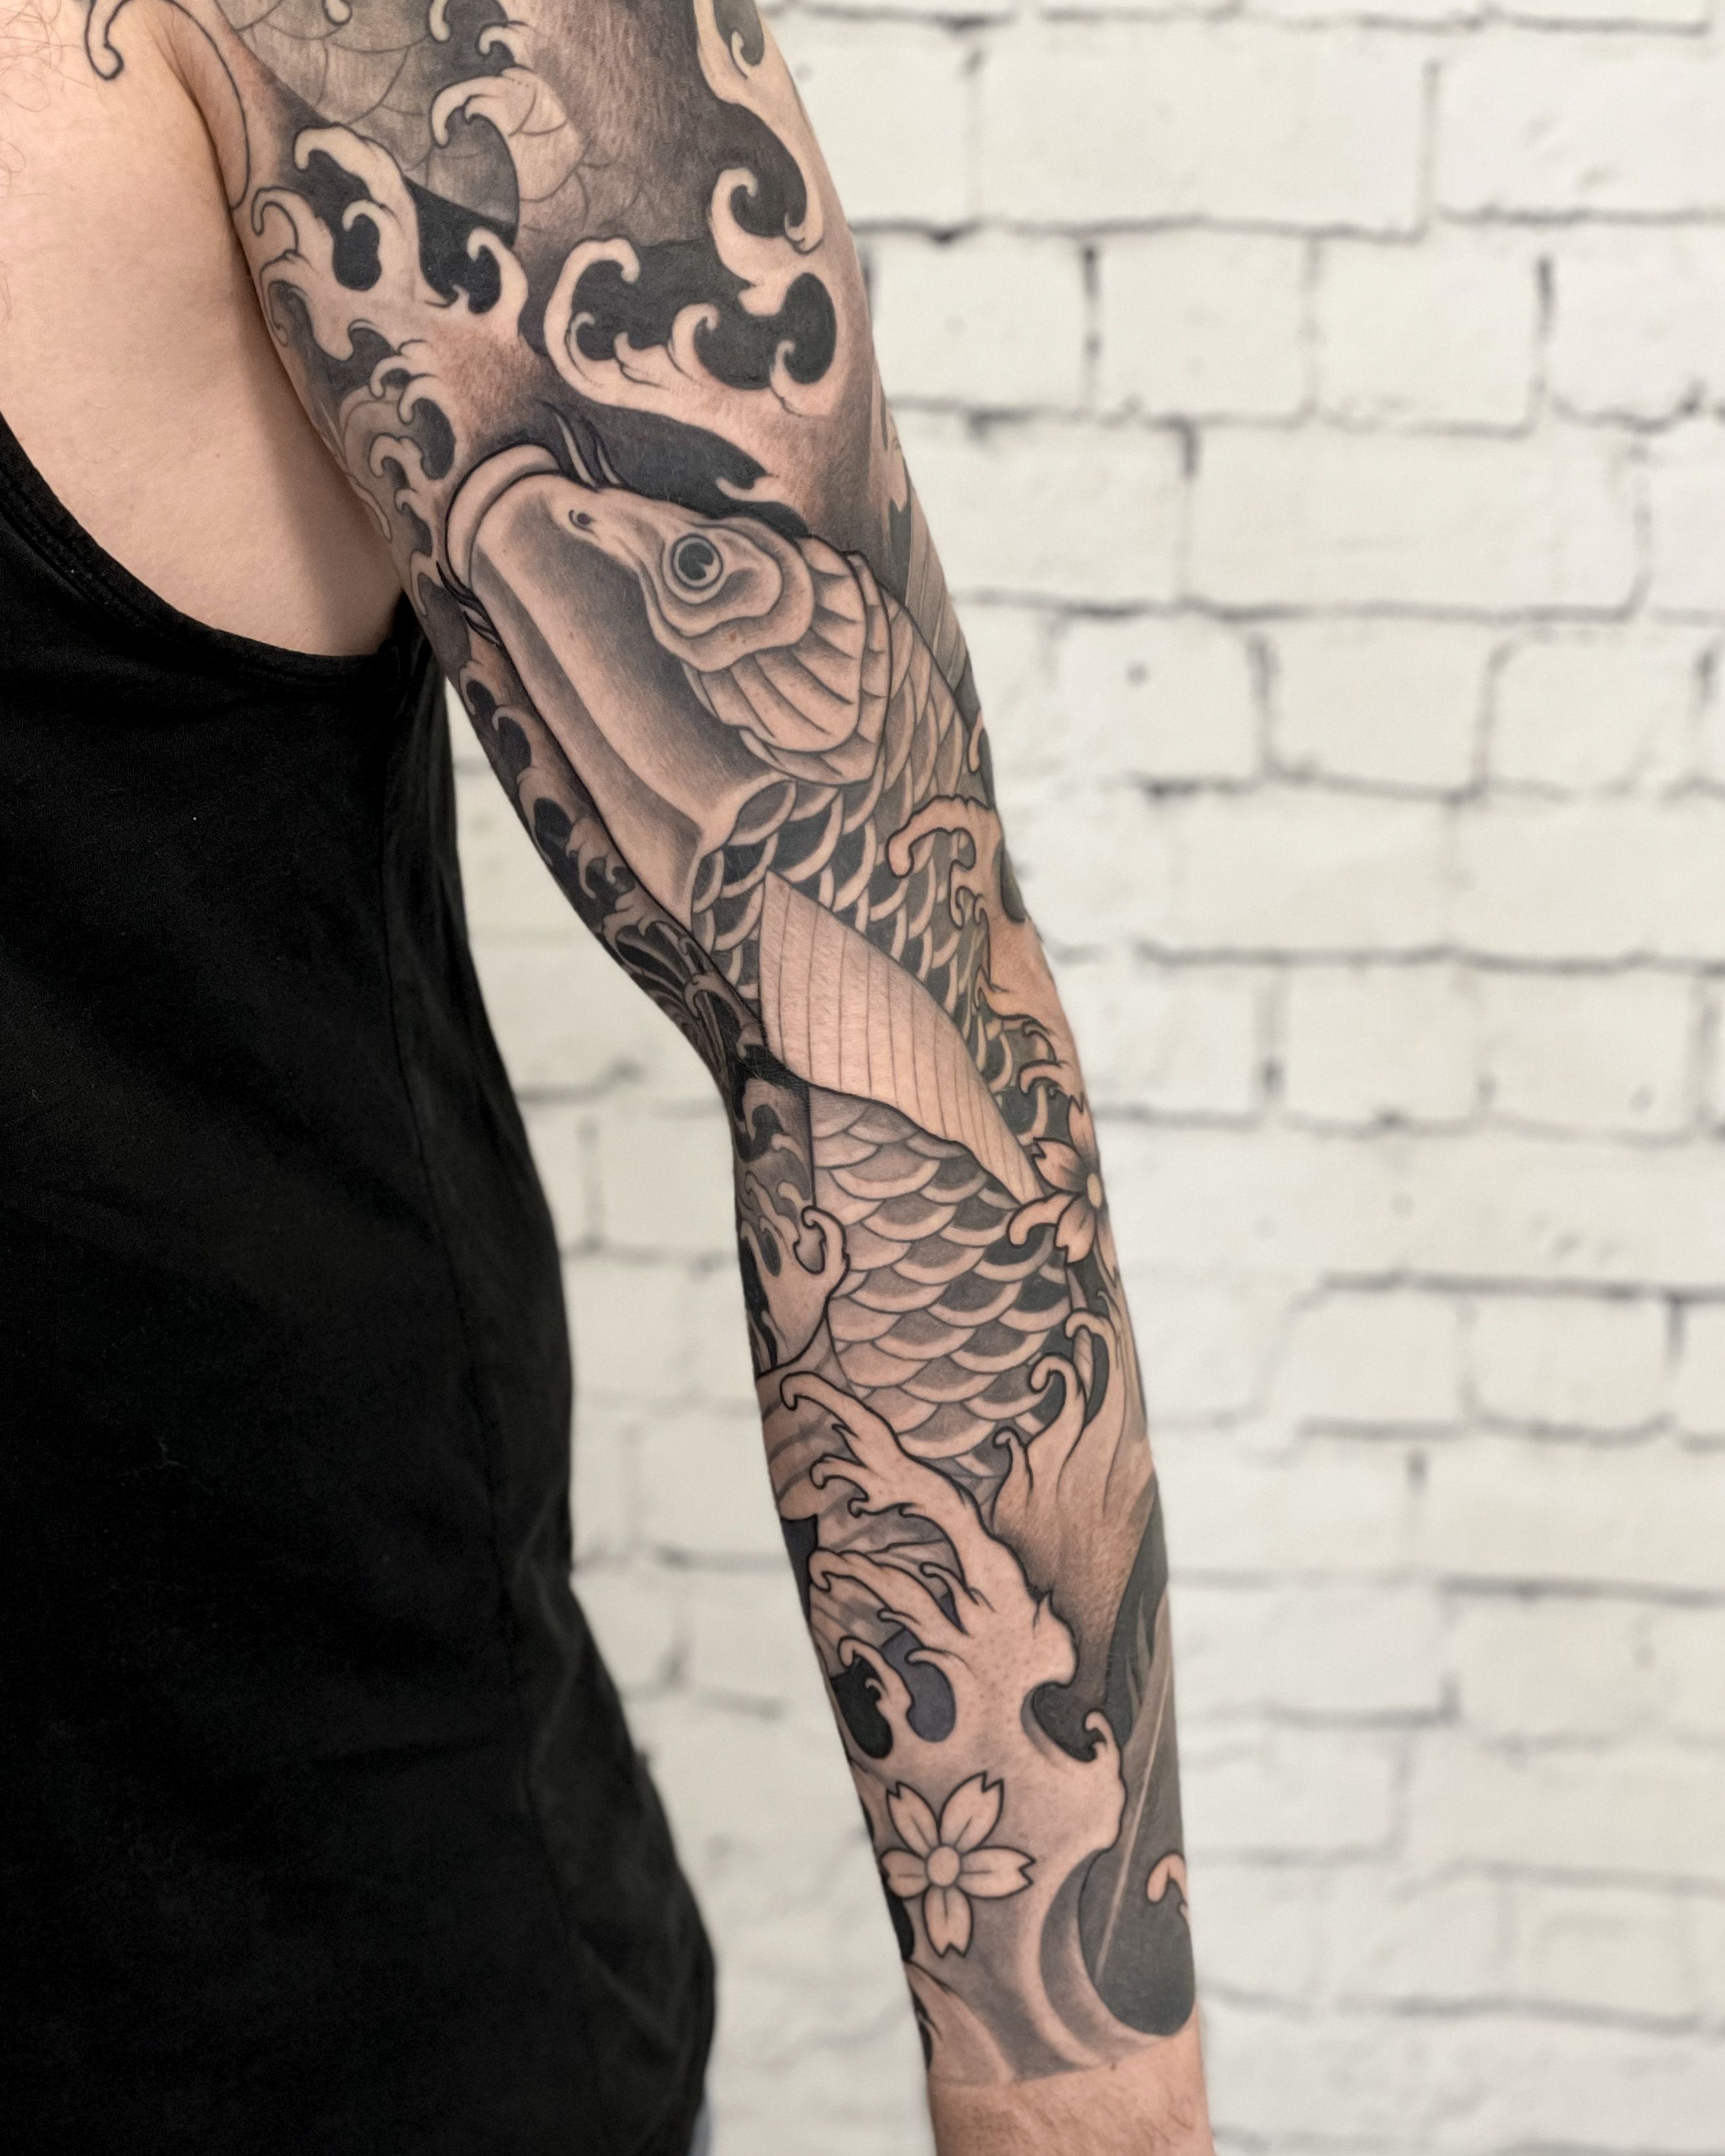 ลายนำมอใหม  Sleeve tattoos Wave tattoo design Wave tattoo sleeve